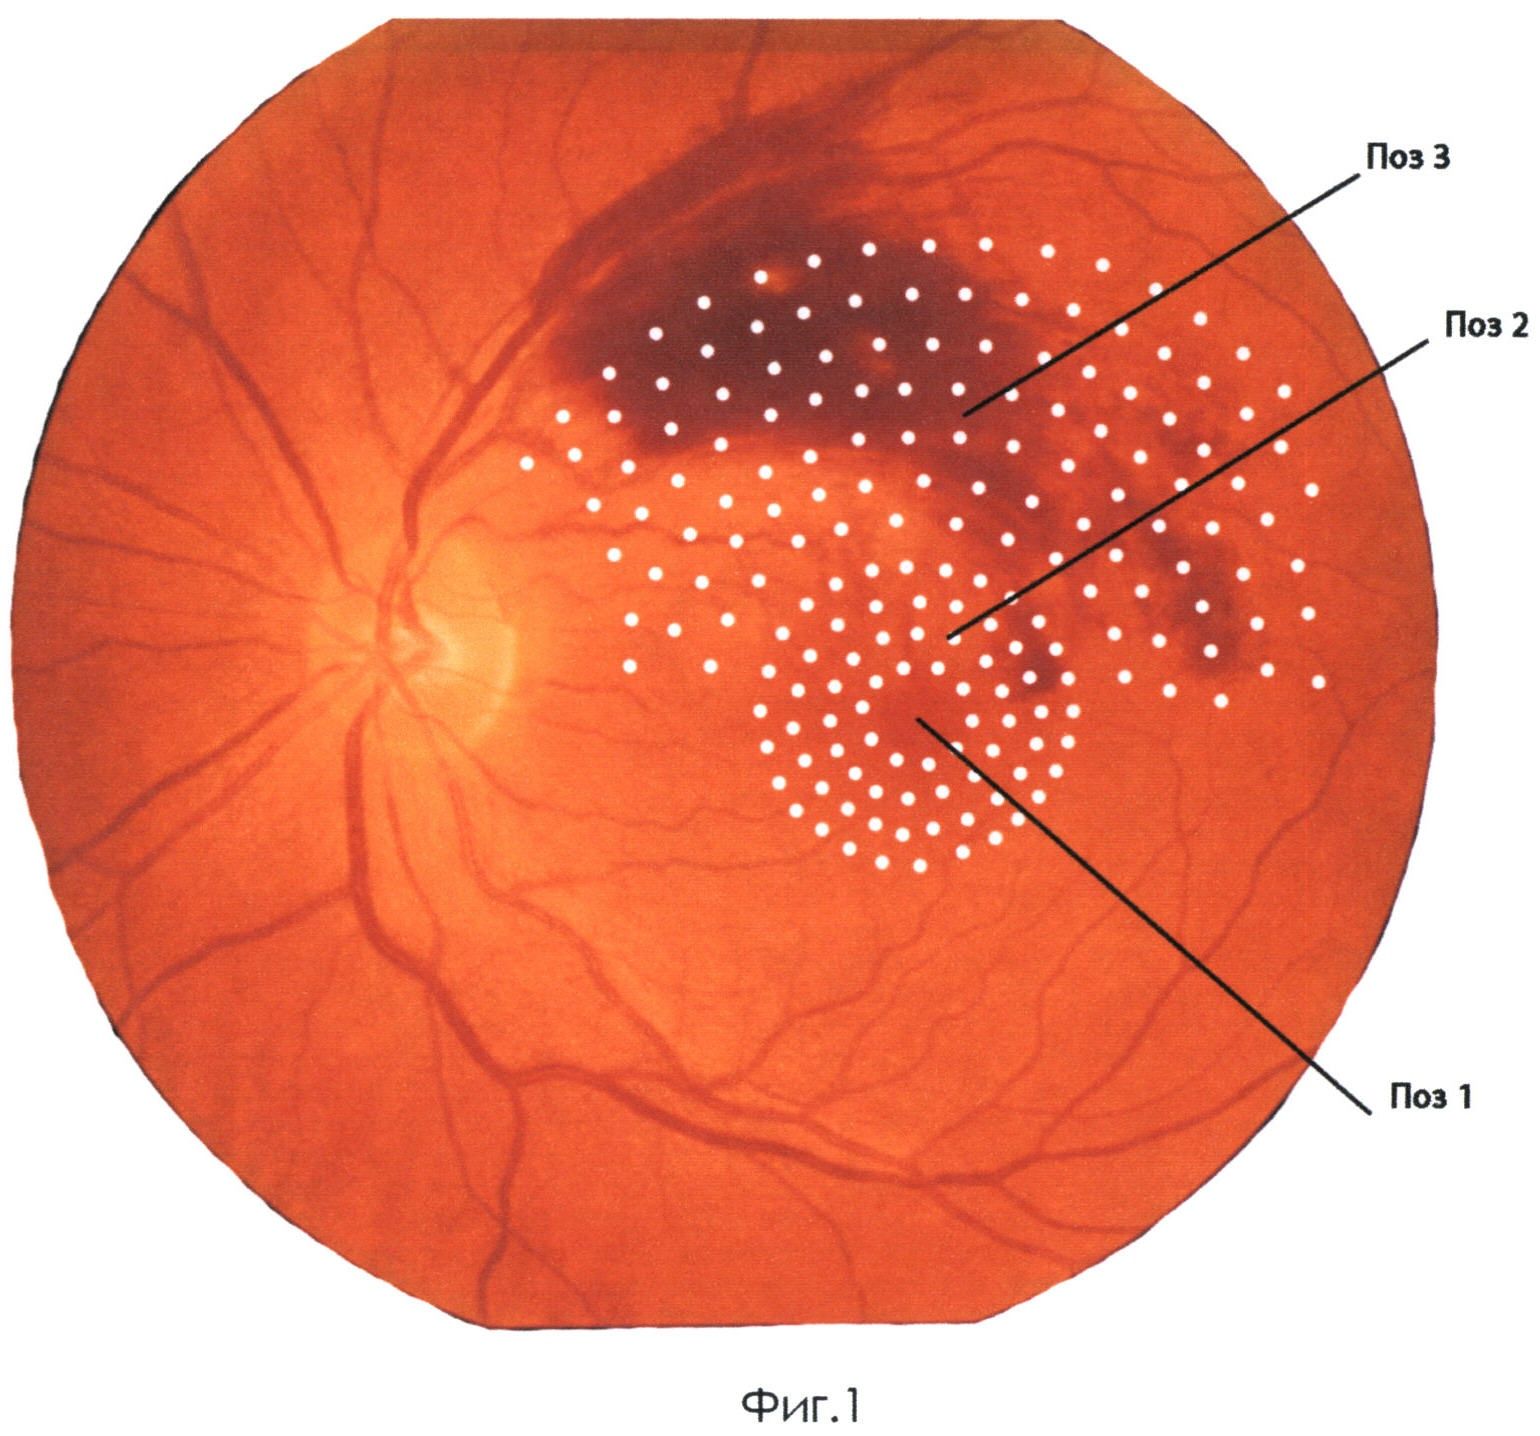 Глаз после лазерной коагуляции сетчатки. Периферическая лазеркоагуляция сетчатки. Панретинальная лазеркоагуляция сетчатки. Лазеркоагуляция сетчатки при диабетической ретинопатии. Барьерная лазеркоагуляция сетчатки.